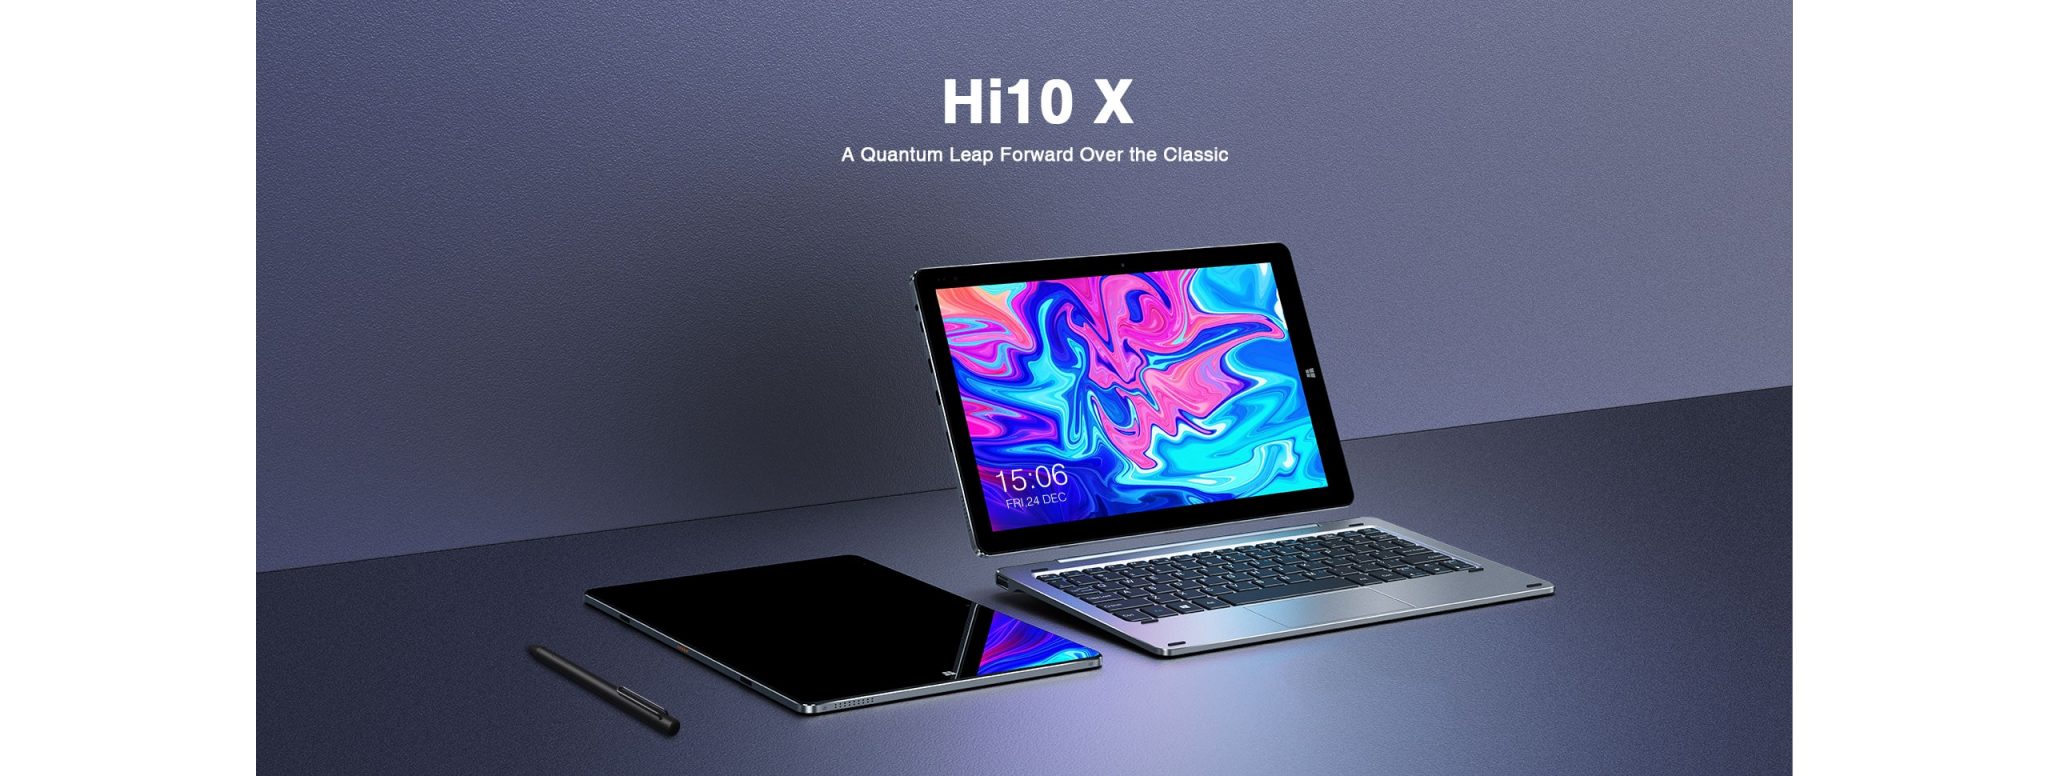 chuwi hi10 X tablet 2 en 1